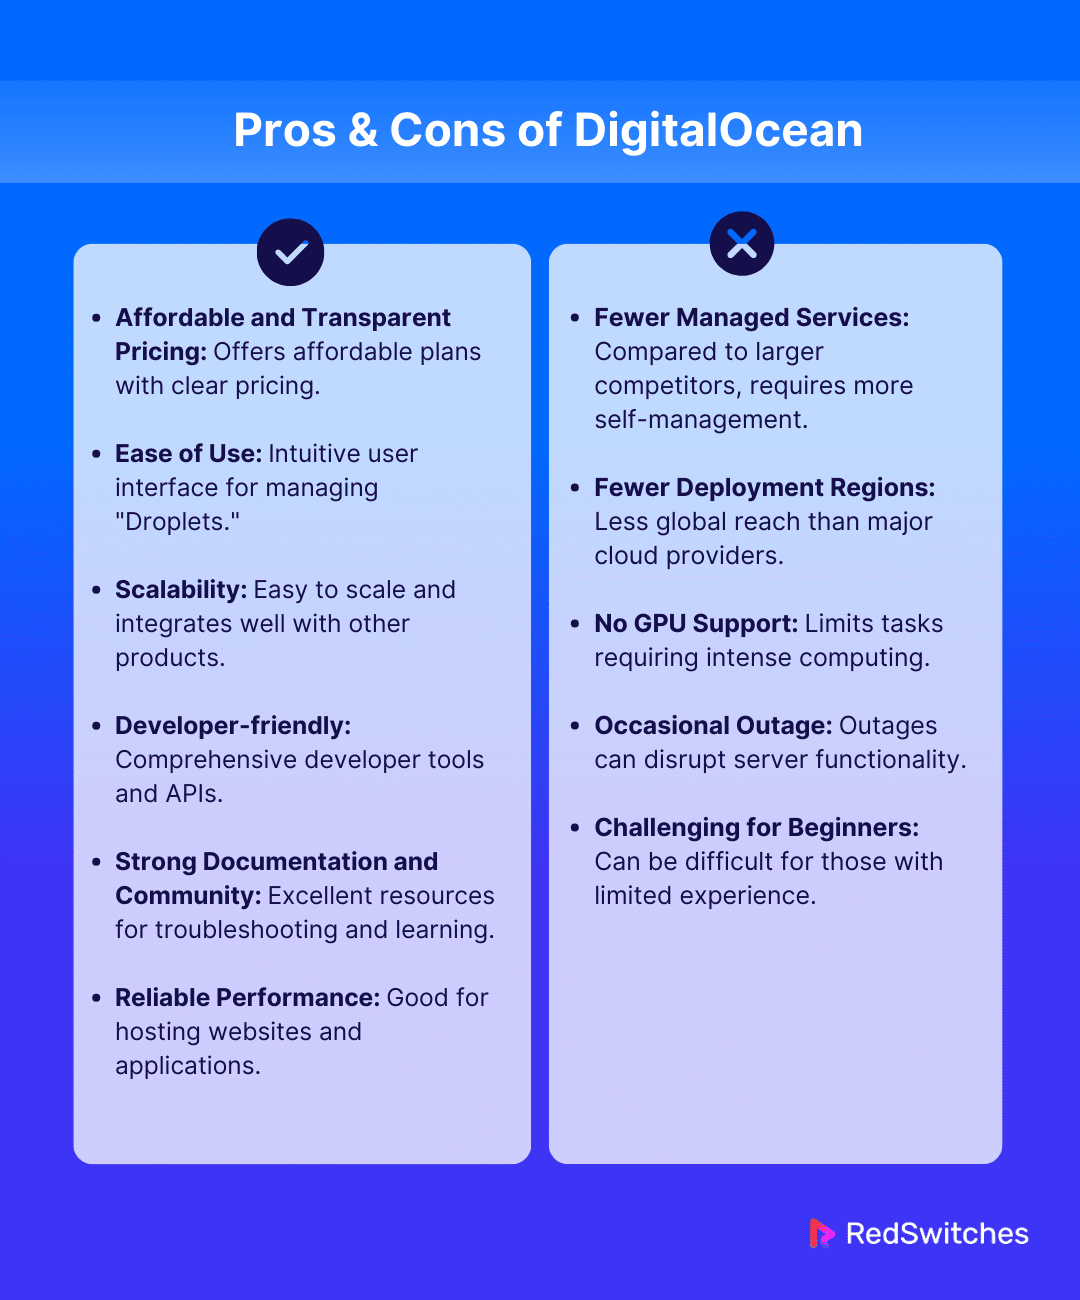 Pros & Cons of DigitalOcean